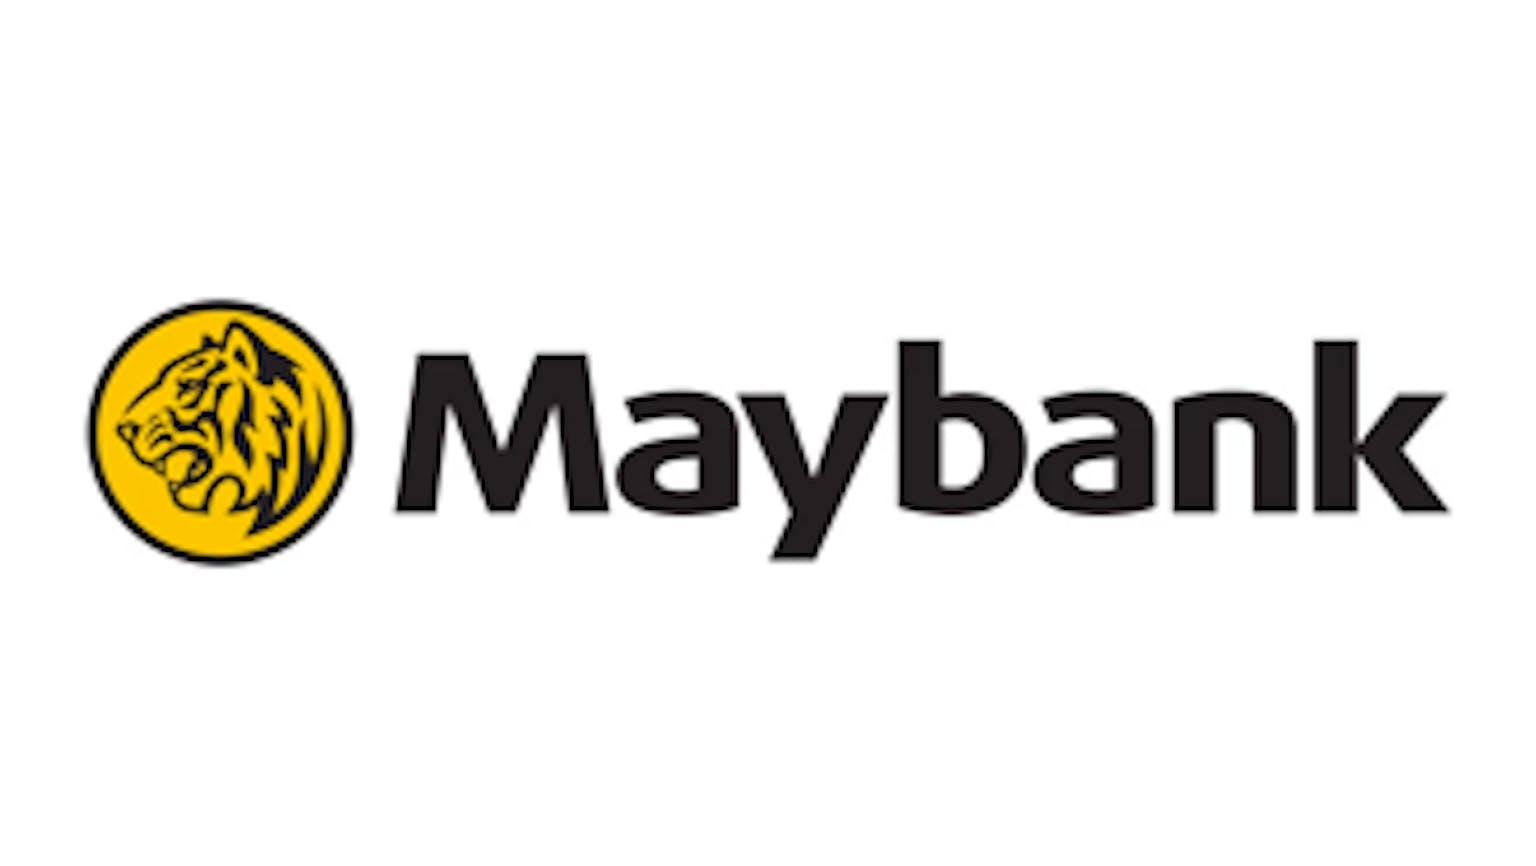 Maybank iSAVvy Savings Account